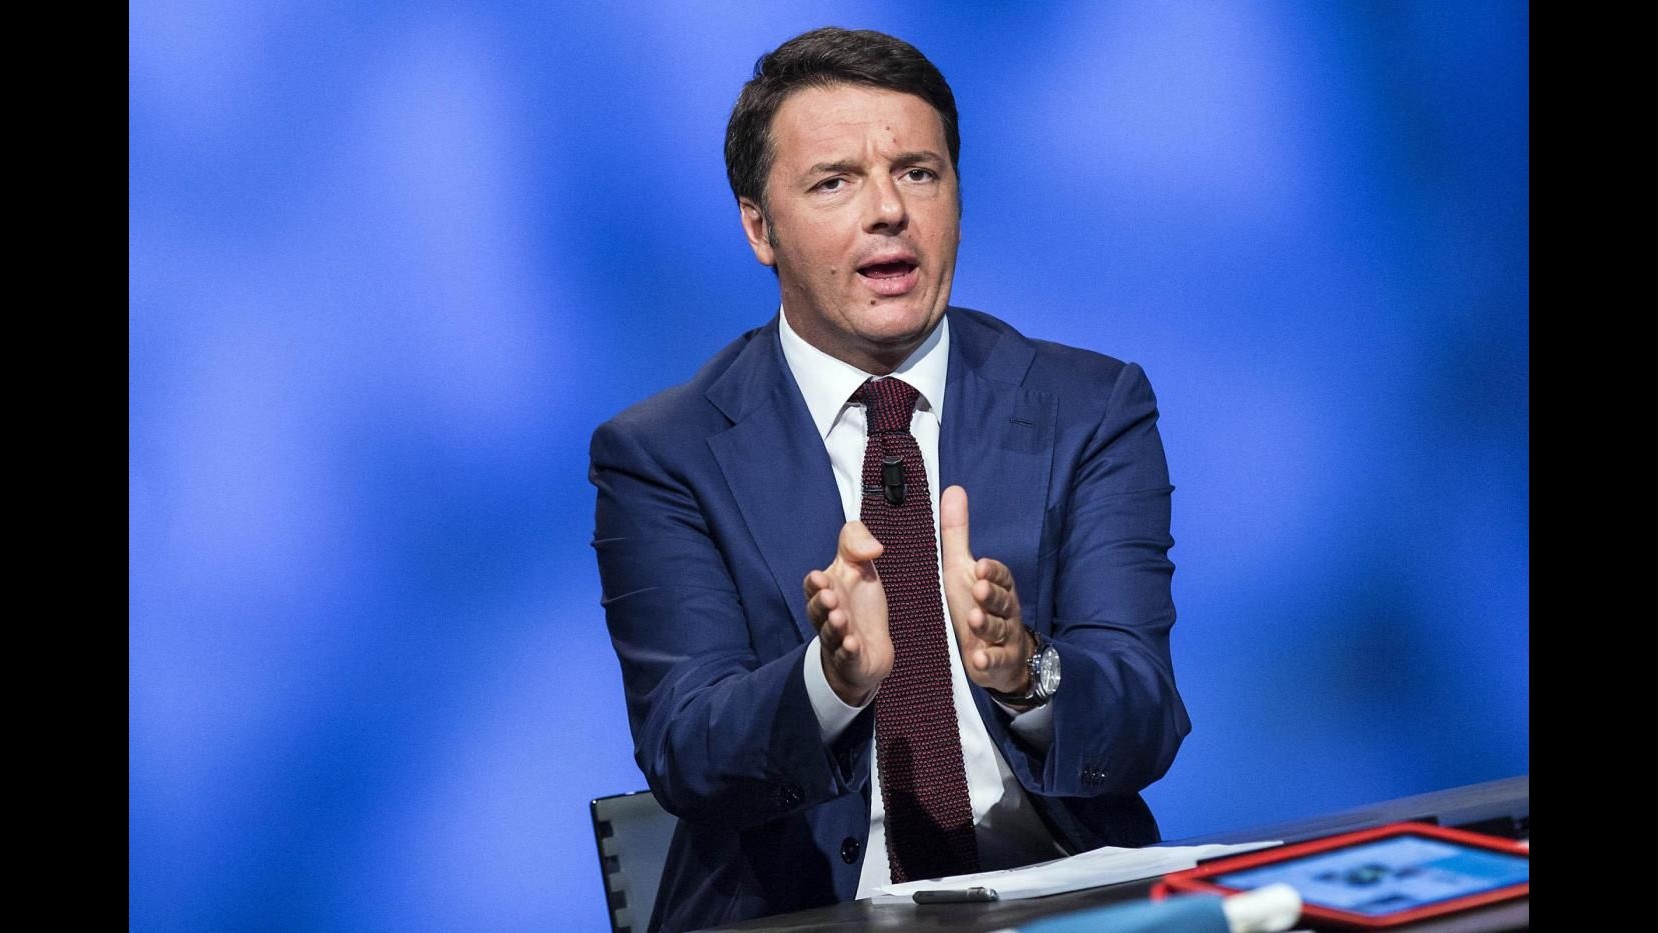 Campidoglio, Renzi: Disonesto chi inventa congiure, è la democrazia